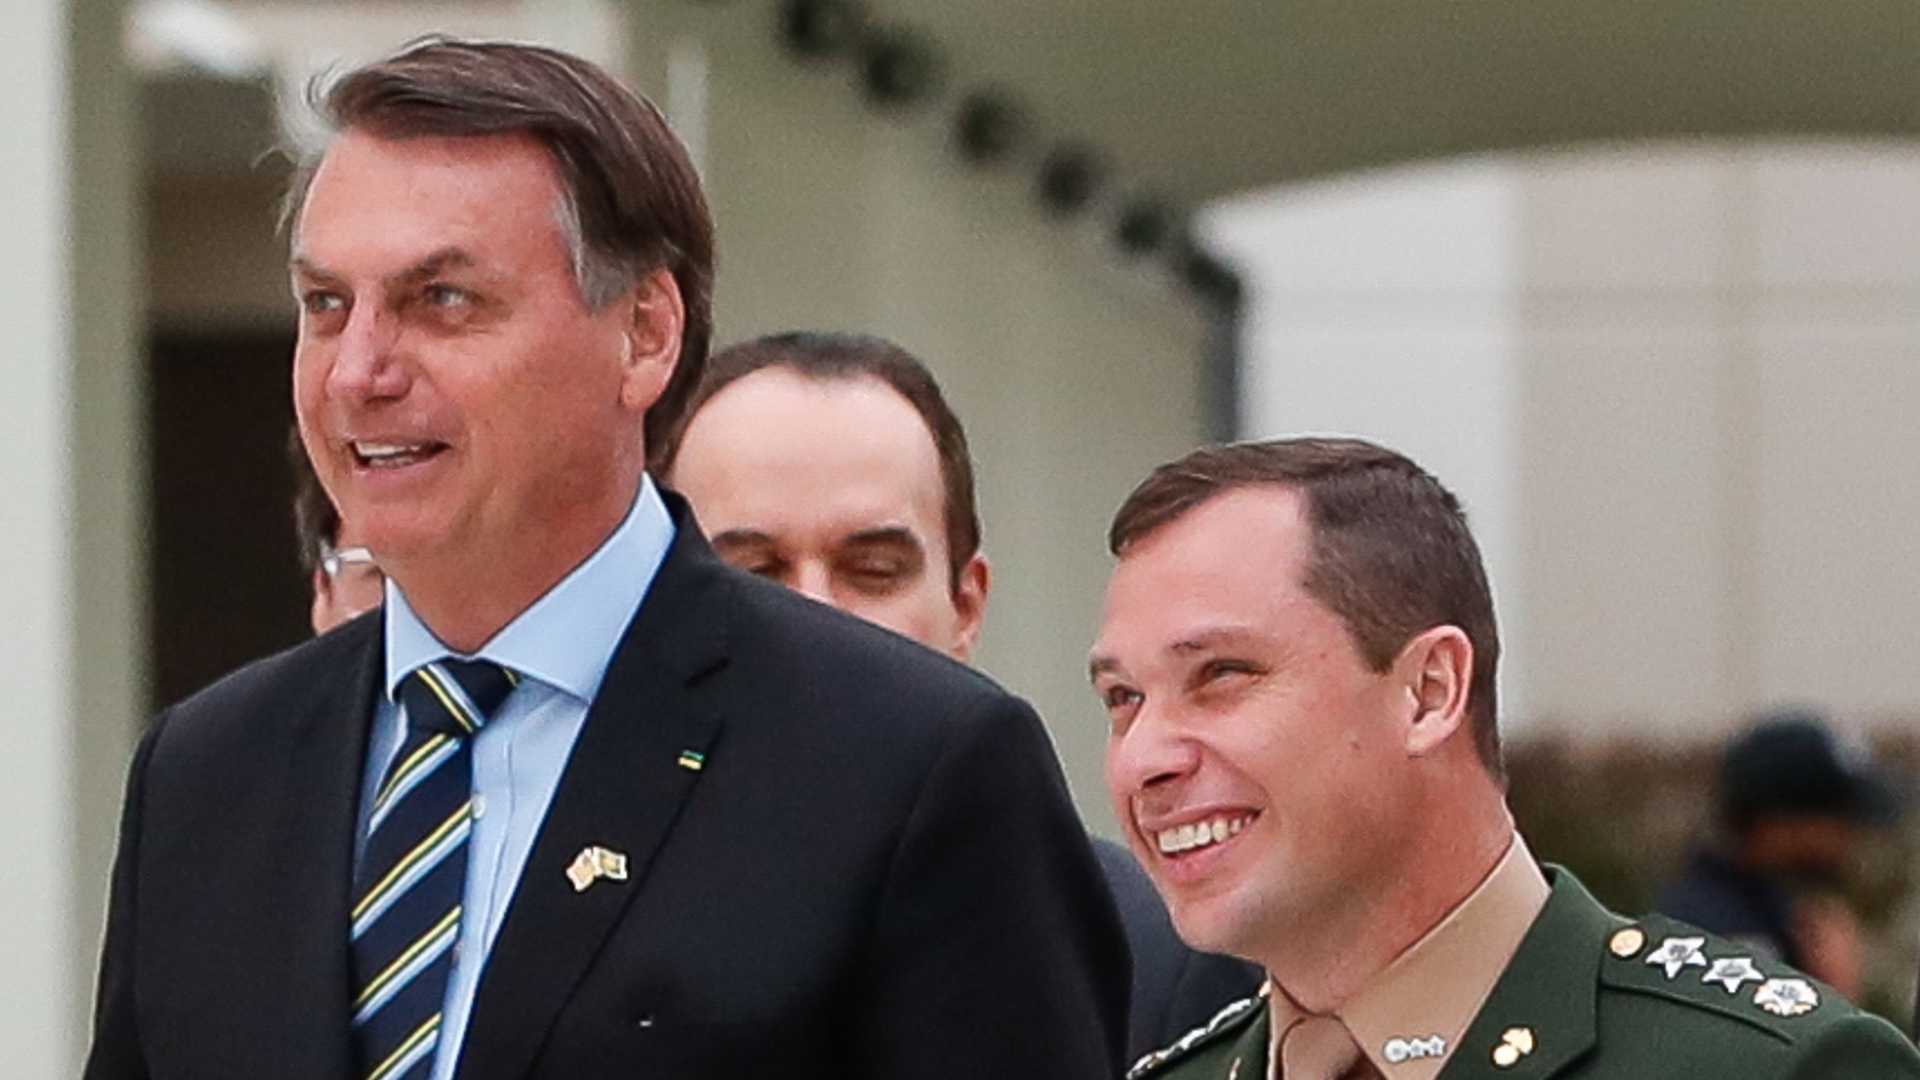 Polícia Federal apreende cerca de R$ 190 mil com ex-ajudante de Bolsonaro